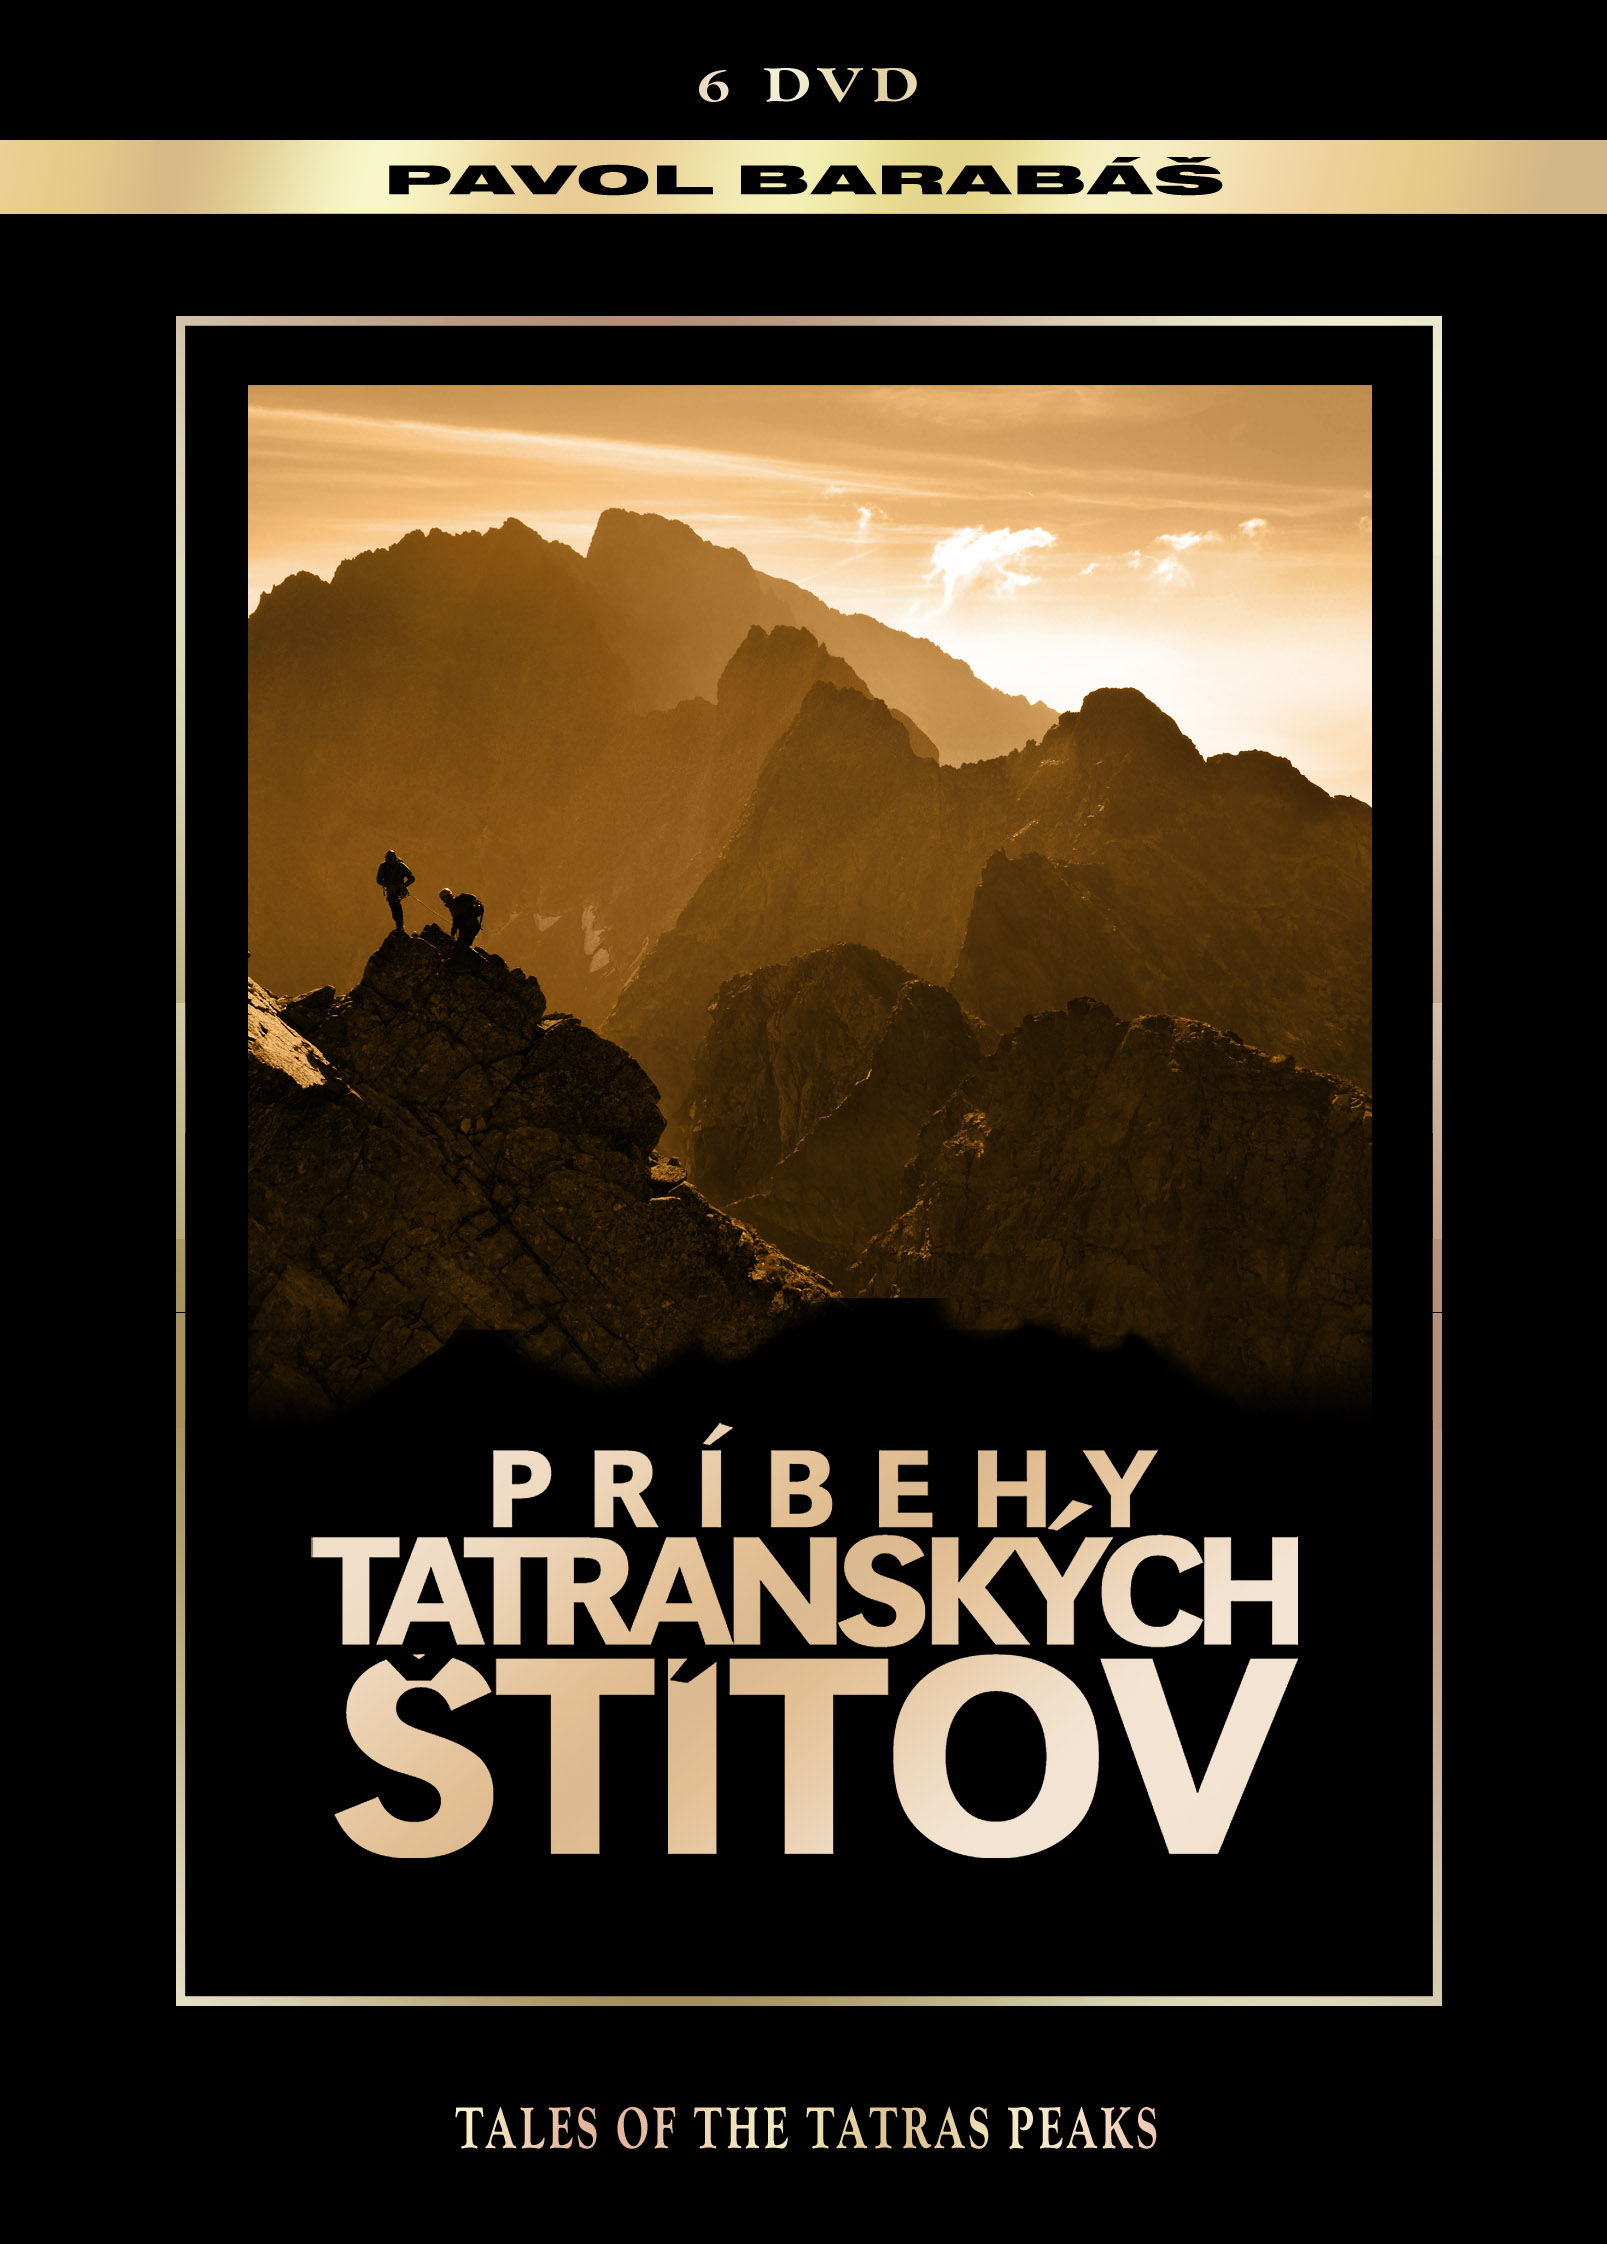 Príbehy tatranských štítov (kolecia 6 DVD)